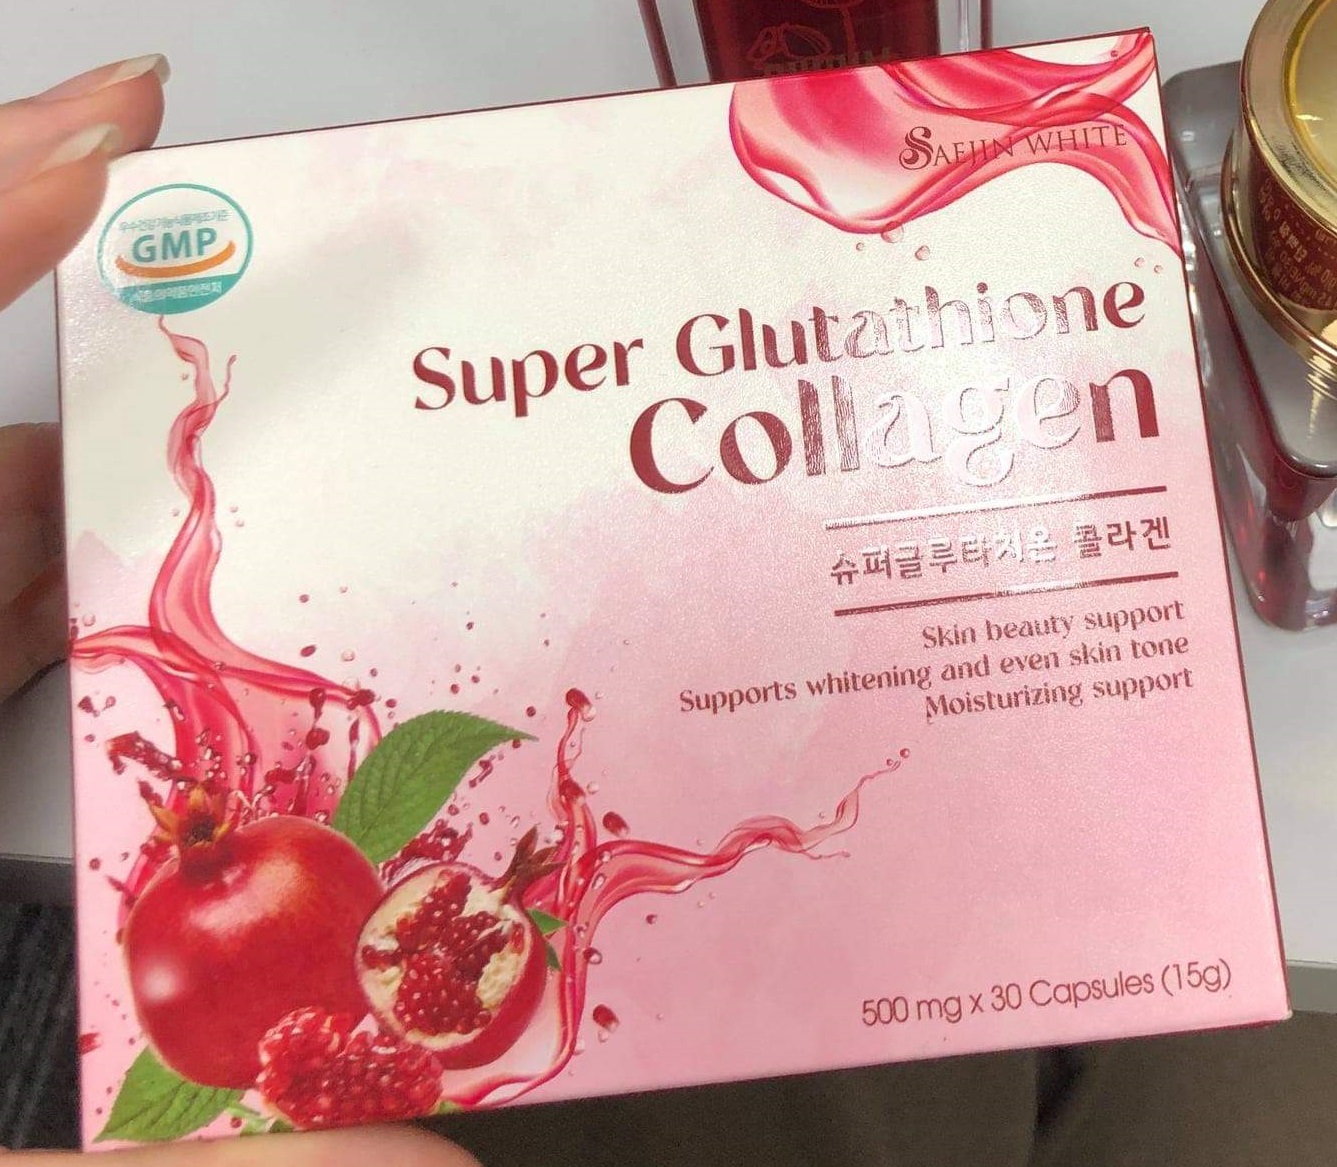 Cách chọn mua viên uống super glutathione collagen chất lượng và an toàn?